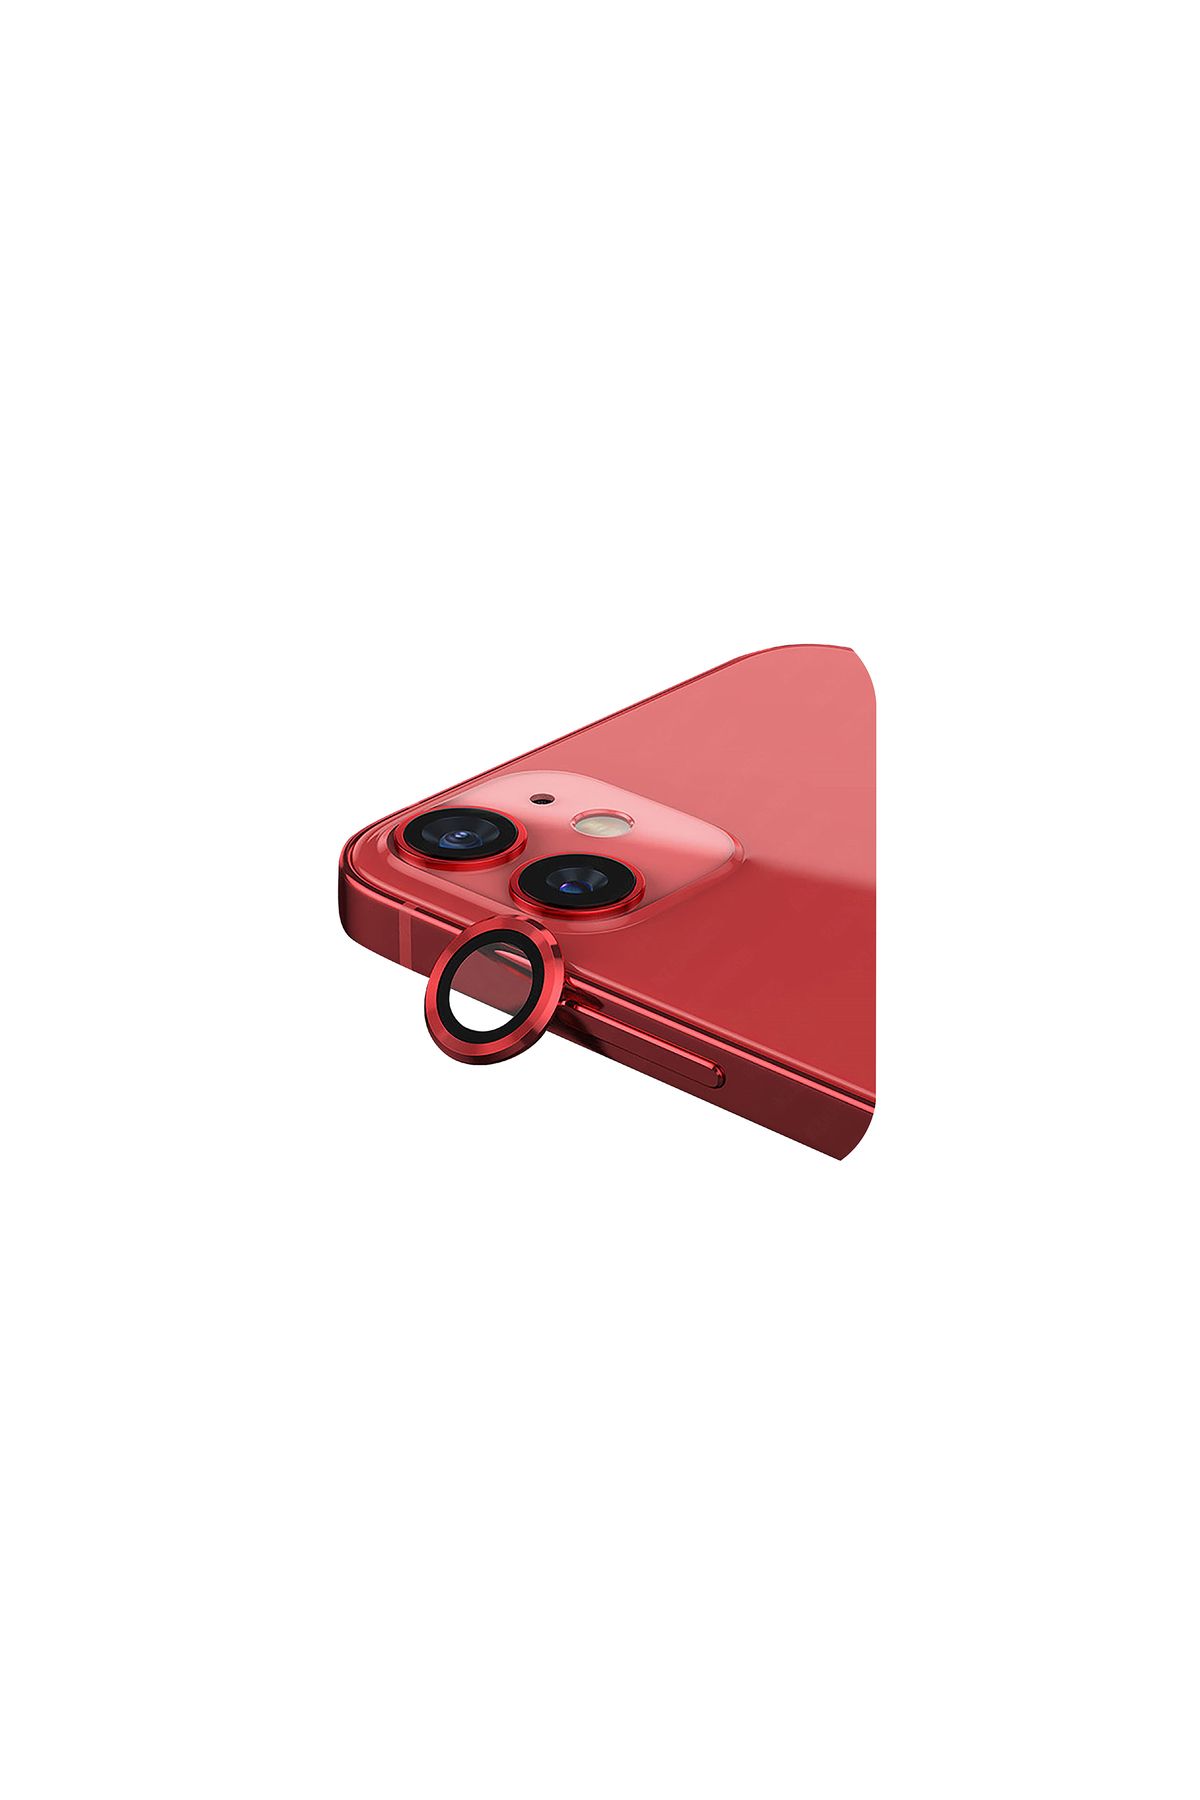 Sunix Iphone 11 Ile Uyumlu Darbeye Dayanıklı Safir Kamera Lens Koruyucu Kırmızı